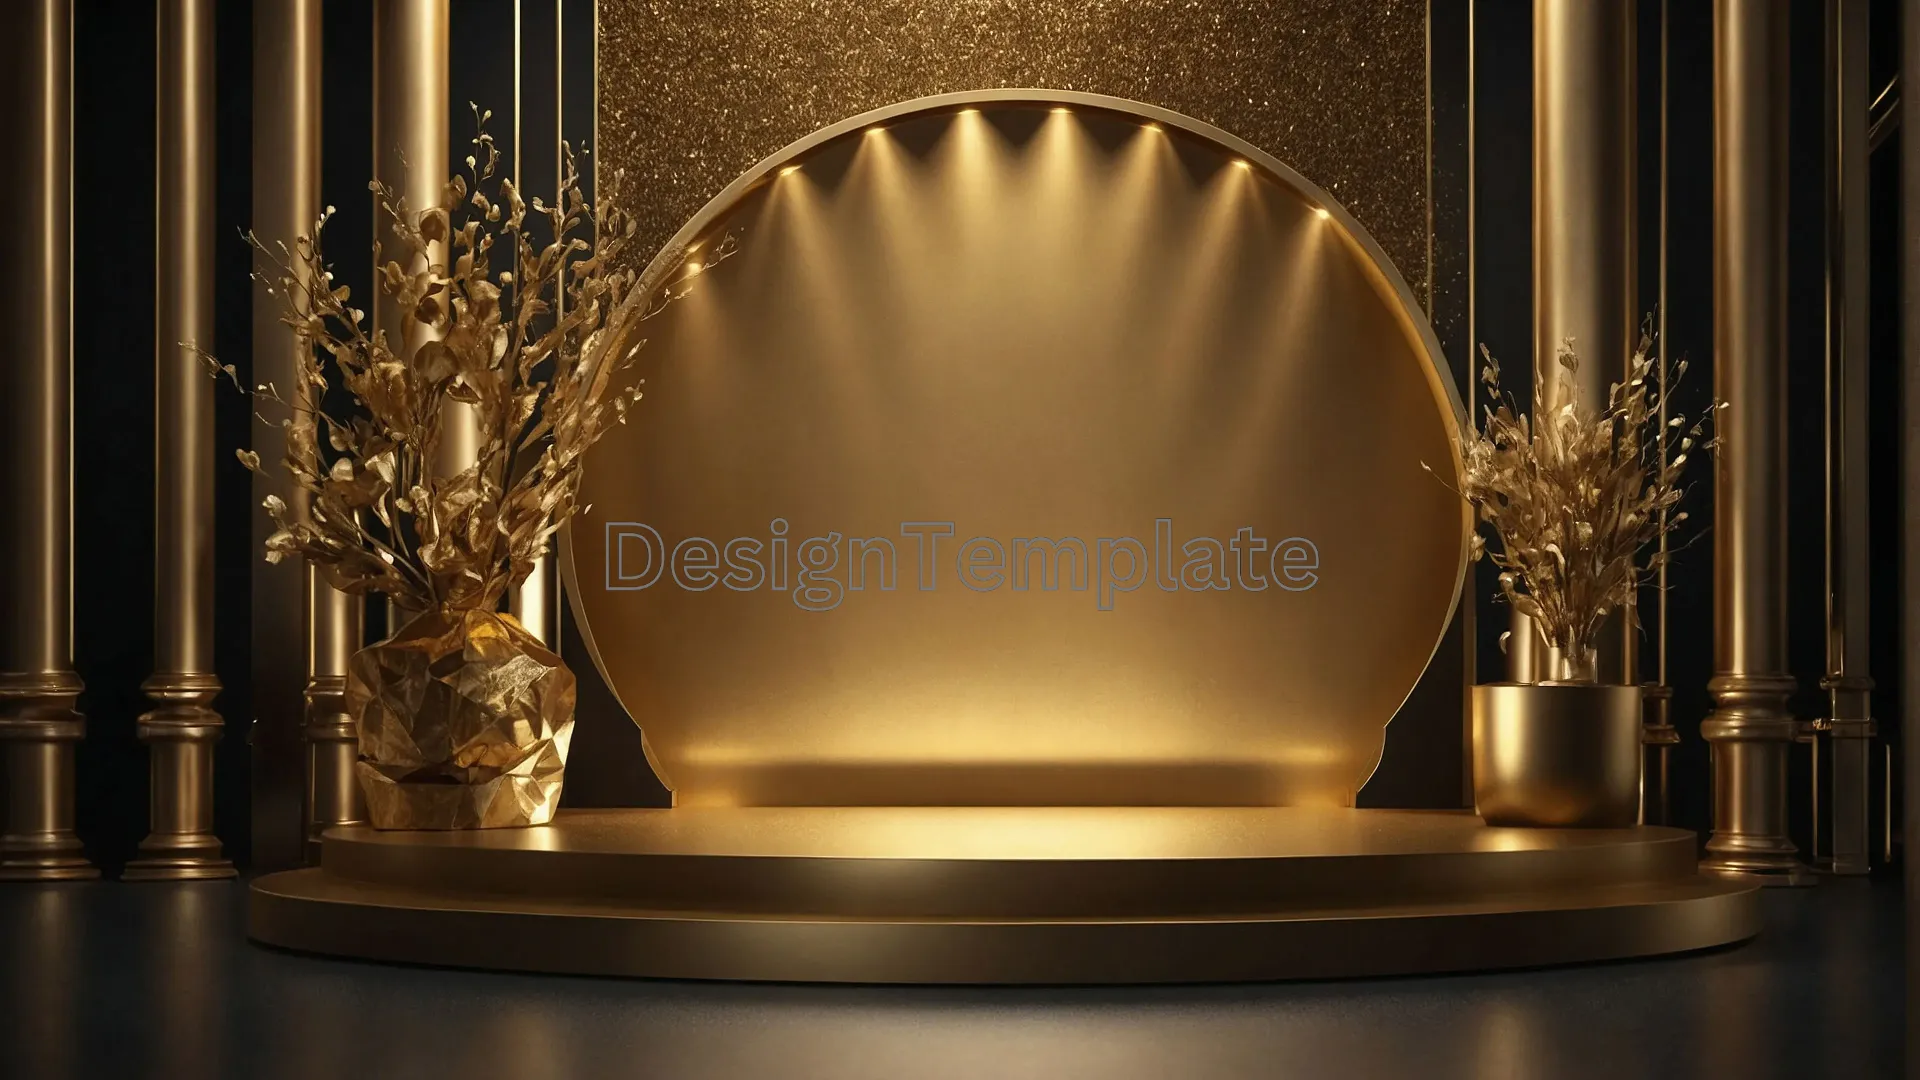 Award Show Podium with Elegant Golden Background Image image